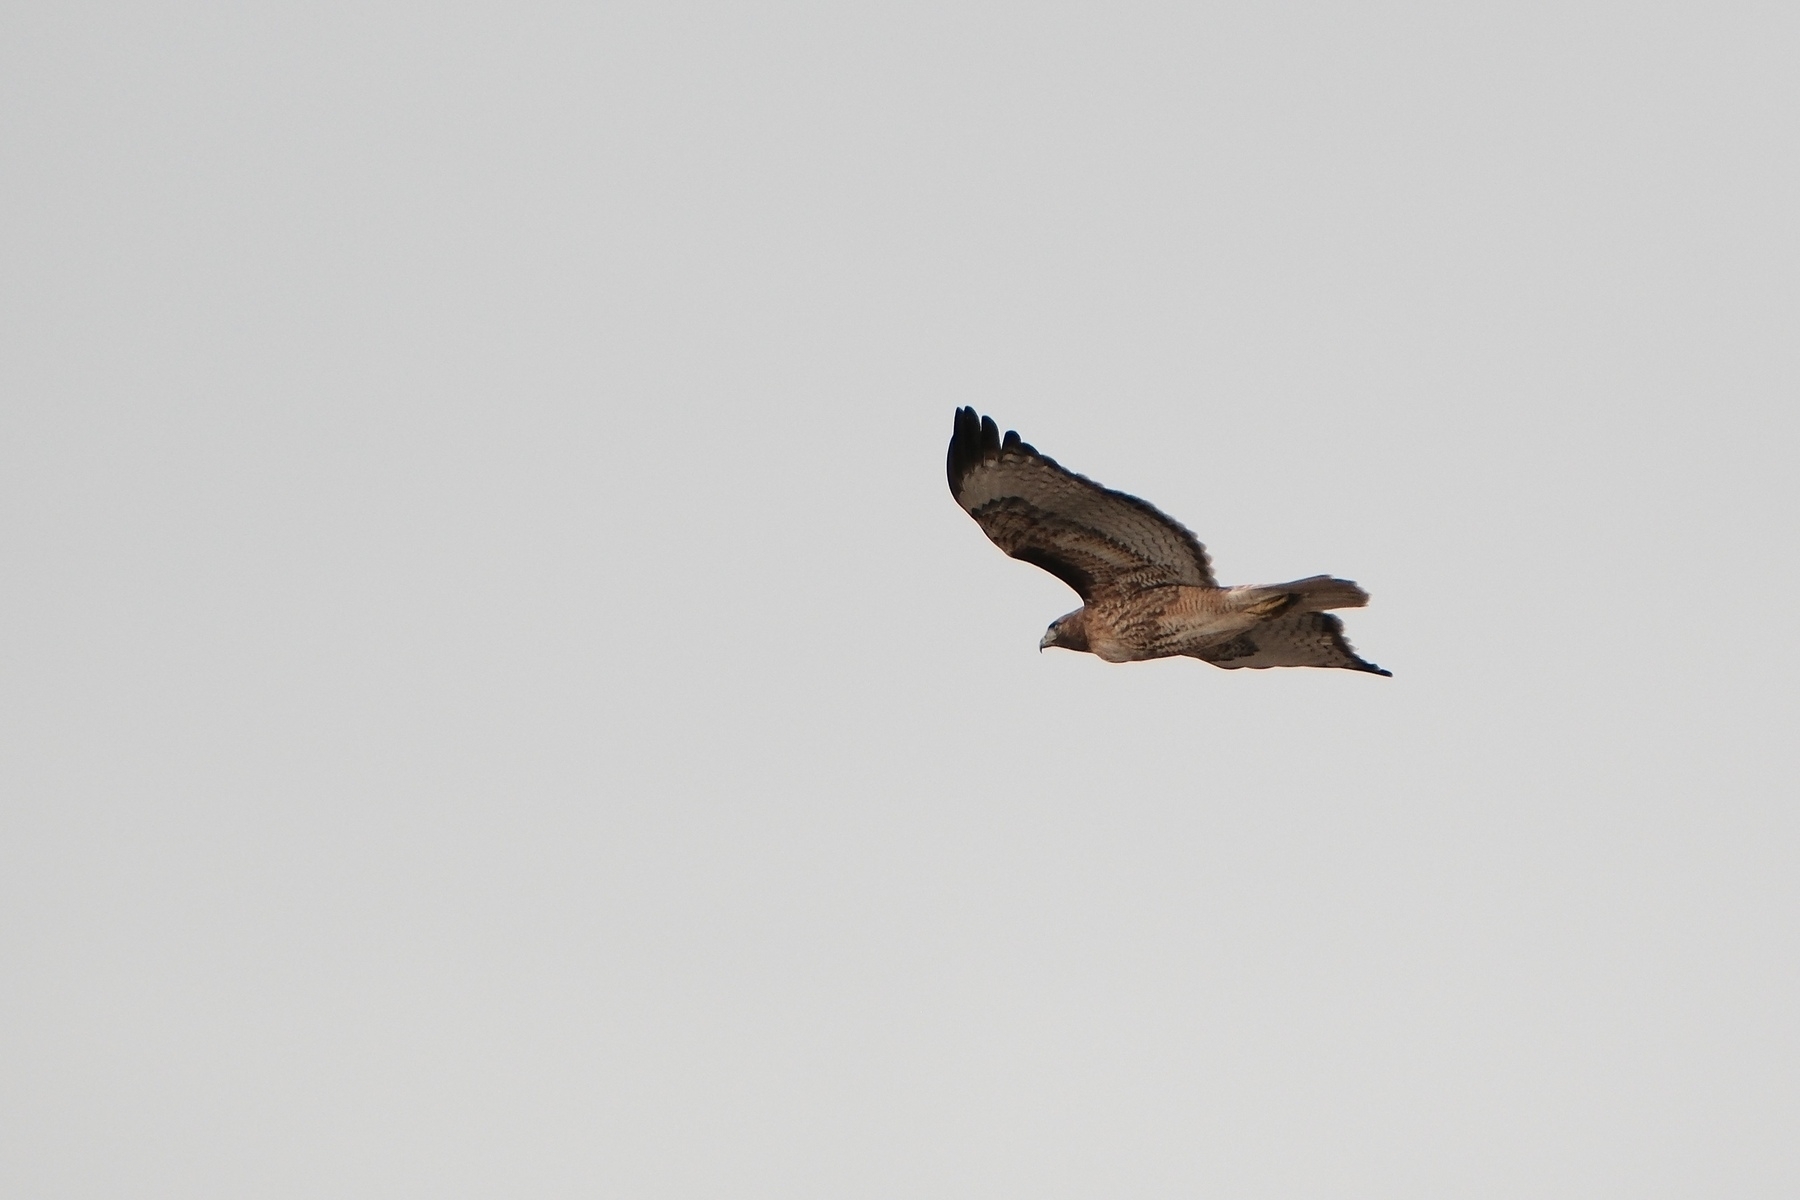 underside of a mottled red tail hawk, soaring in a cloudy sky.